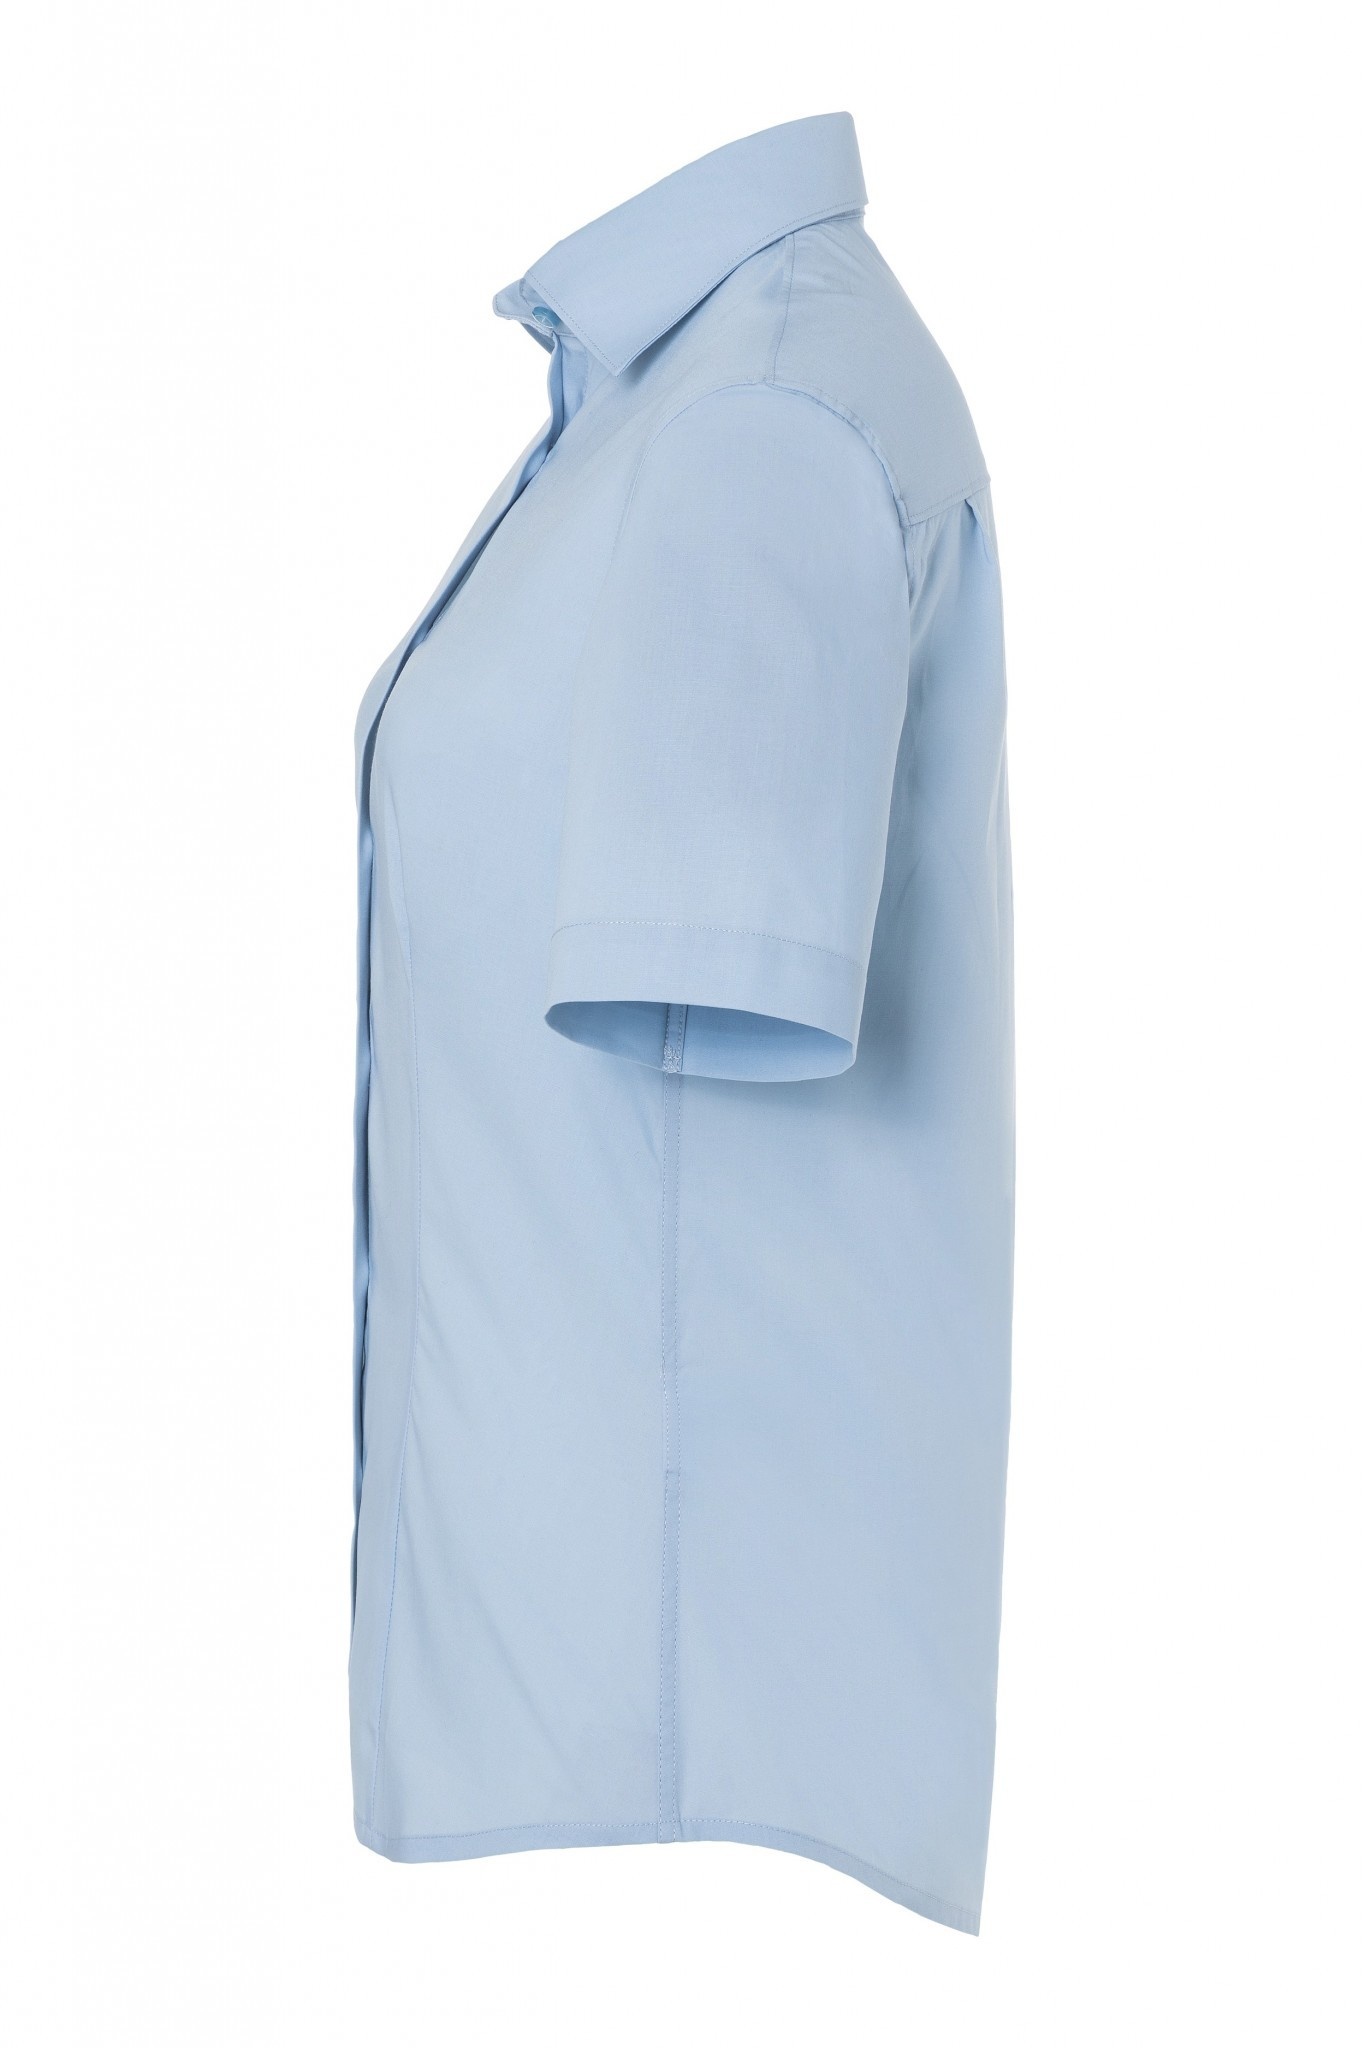 Damenbluse Juli Hellblau | 49% Polyester / 49% Baumwolle / 2% Elastolefin | Erhältlich in 10 Größen